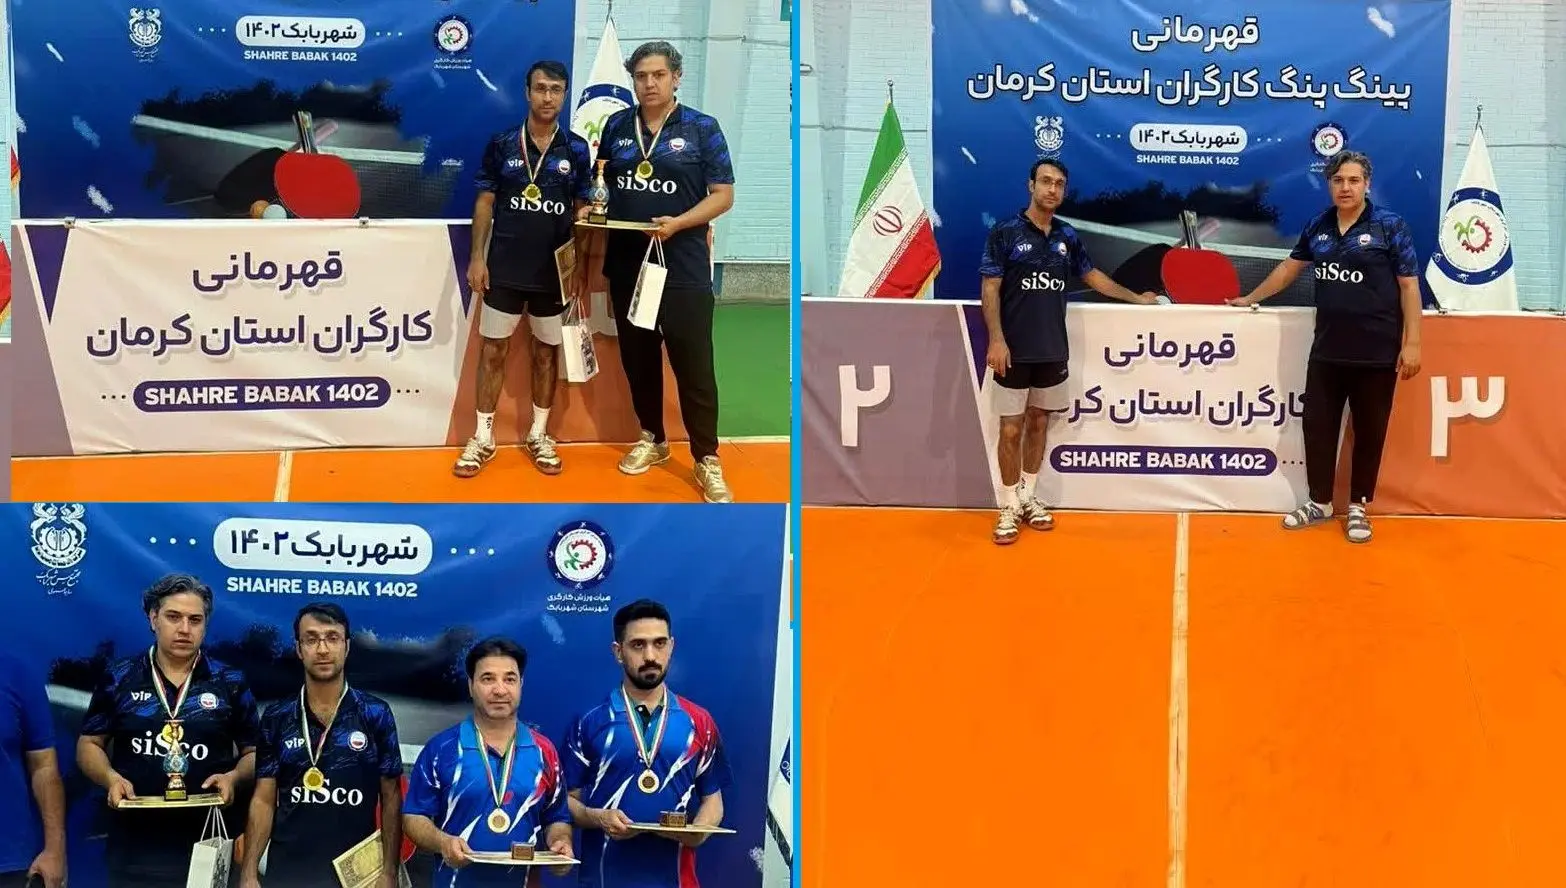 قهرمانی مجتمع سیرجان در مسابقات تنیس روی میز کارگری استان کرمان